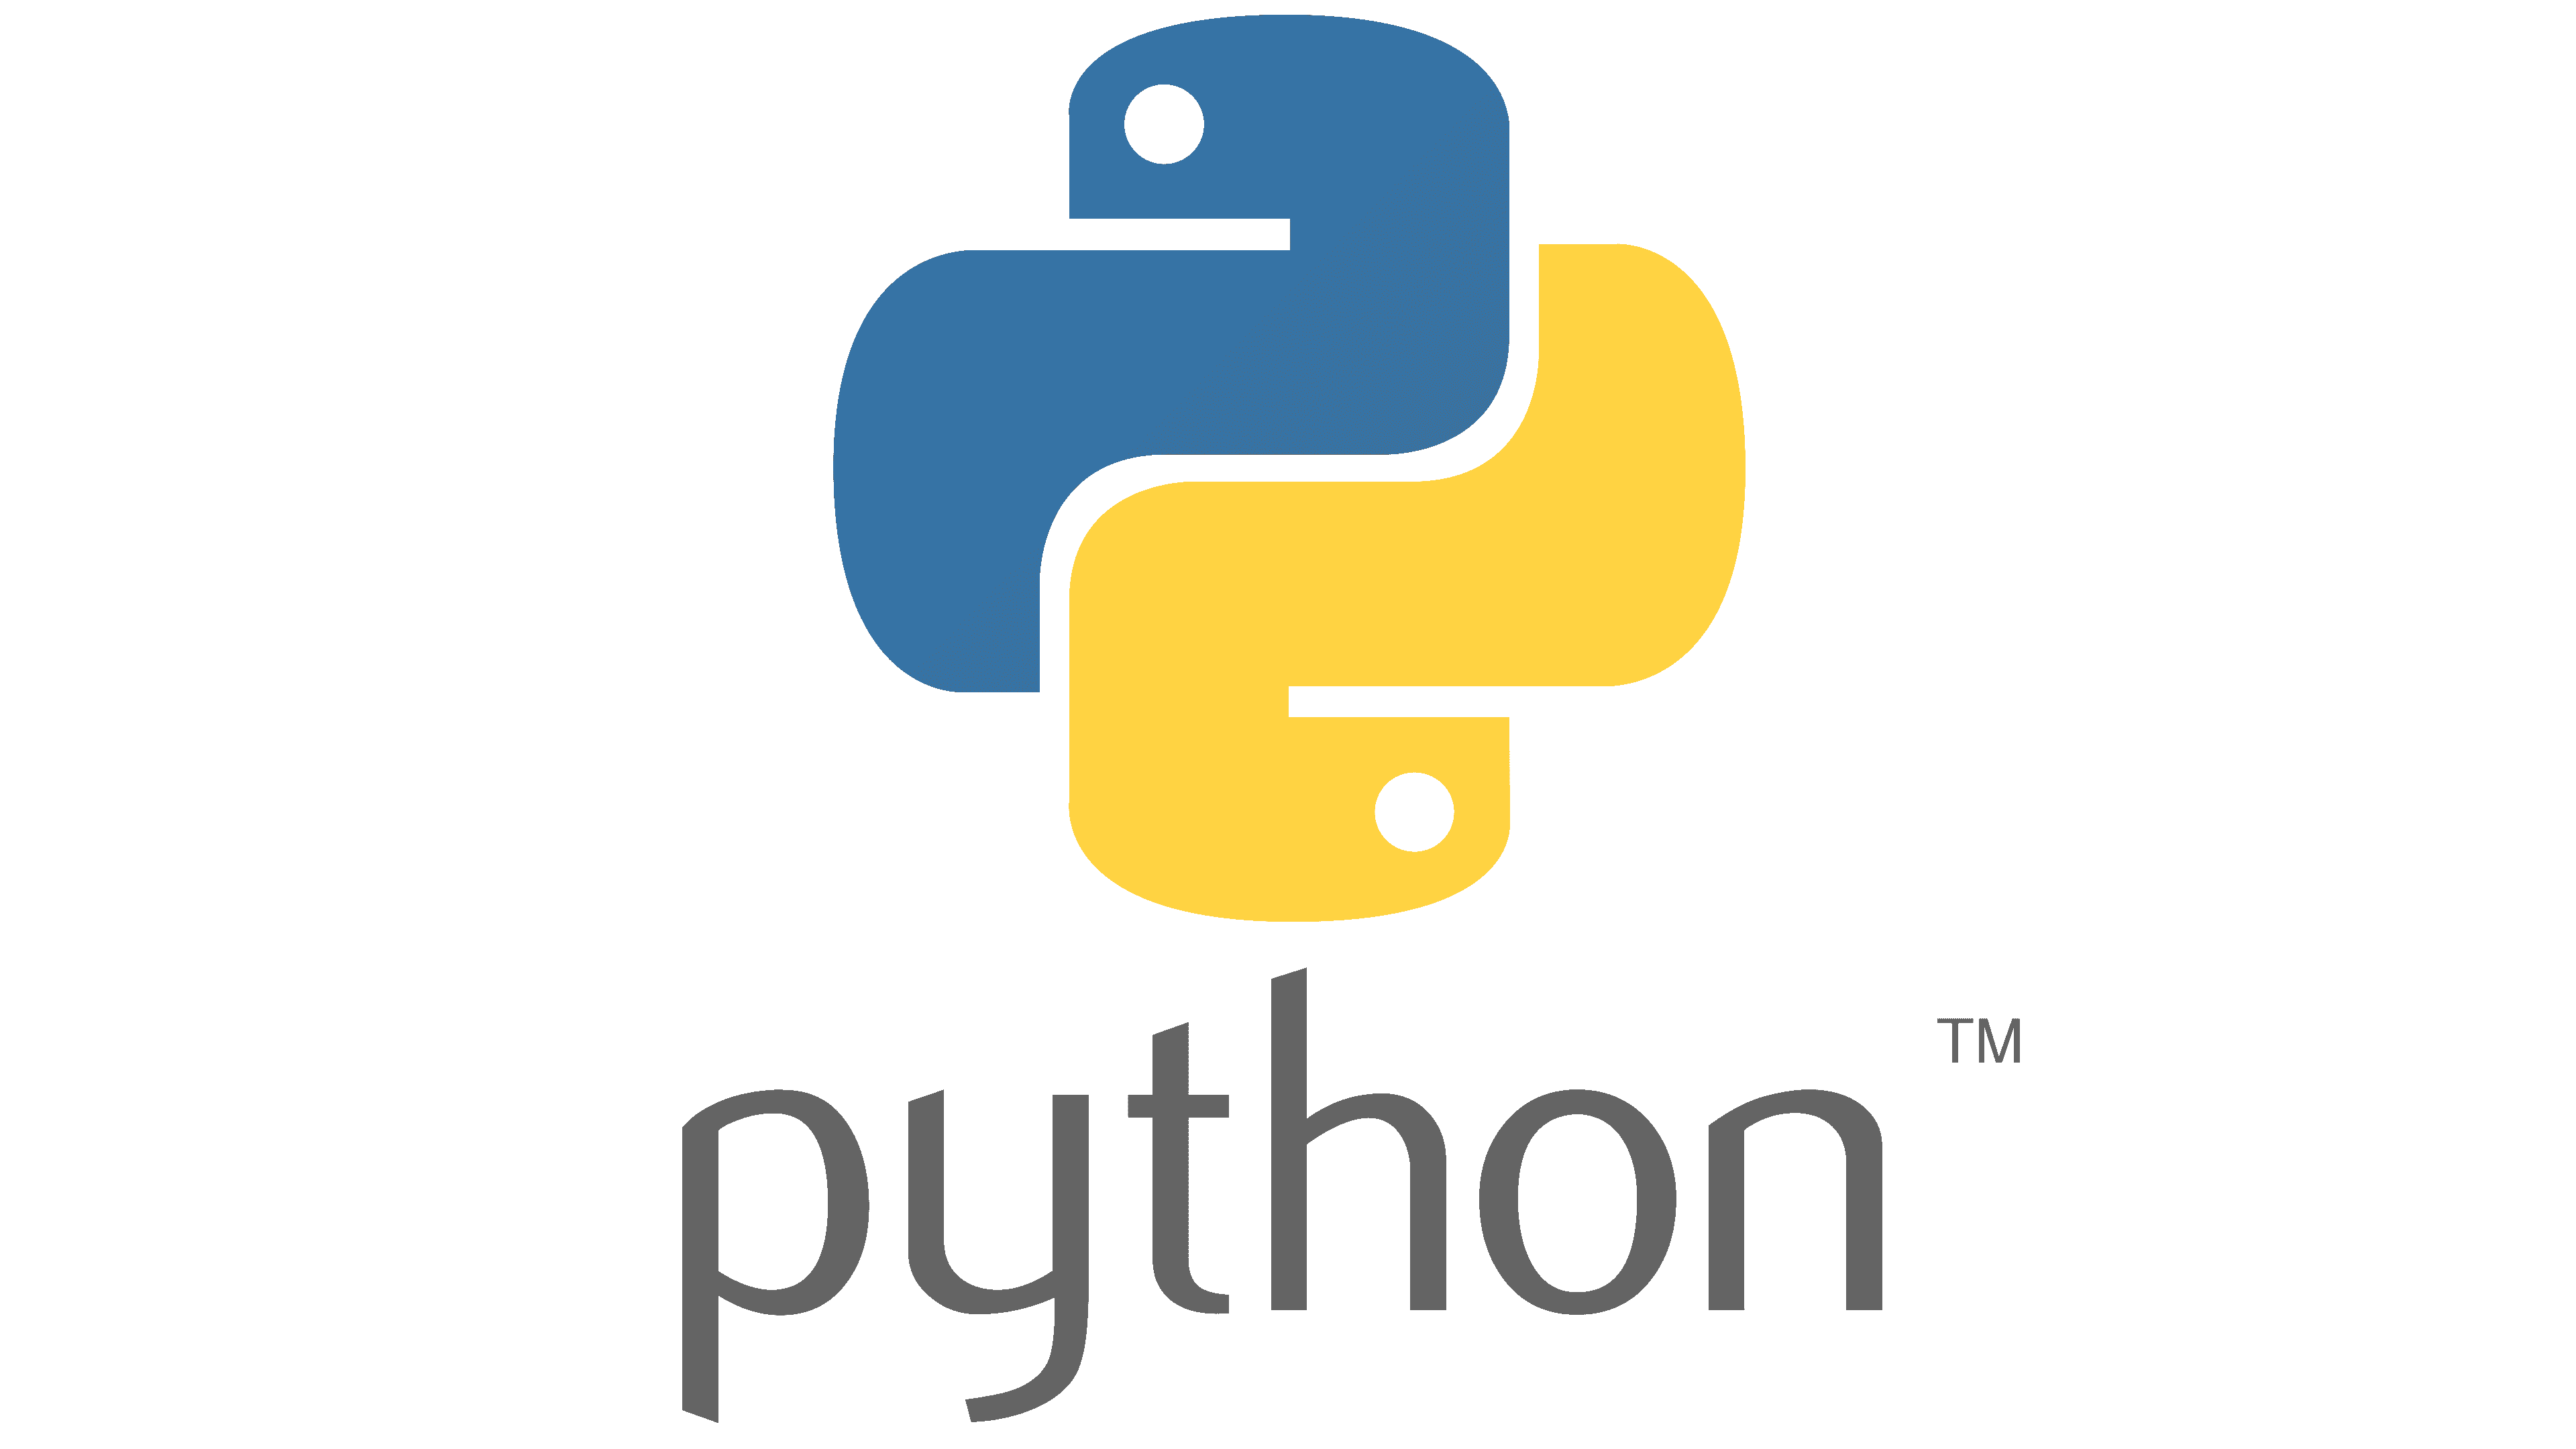 String Reversal in Python